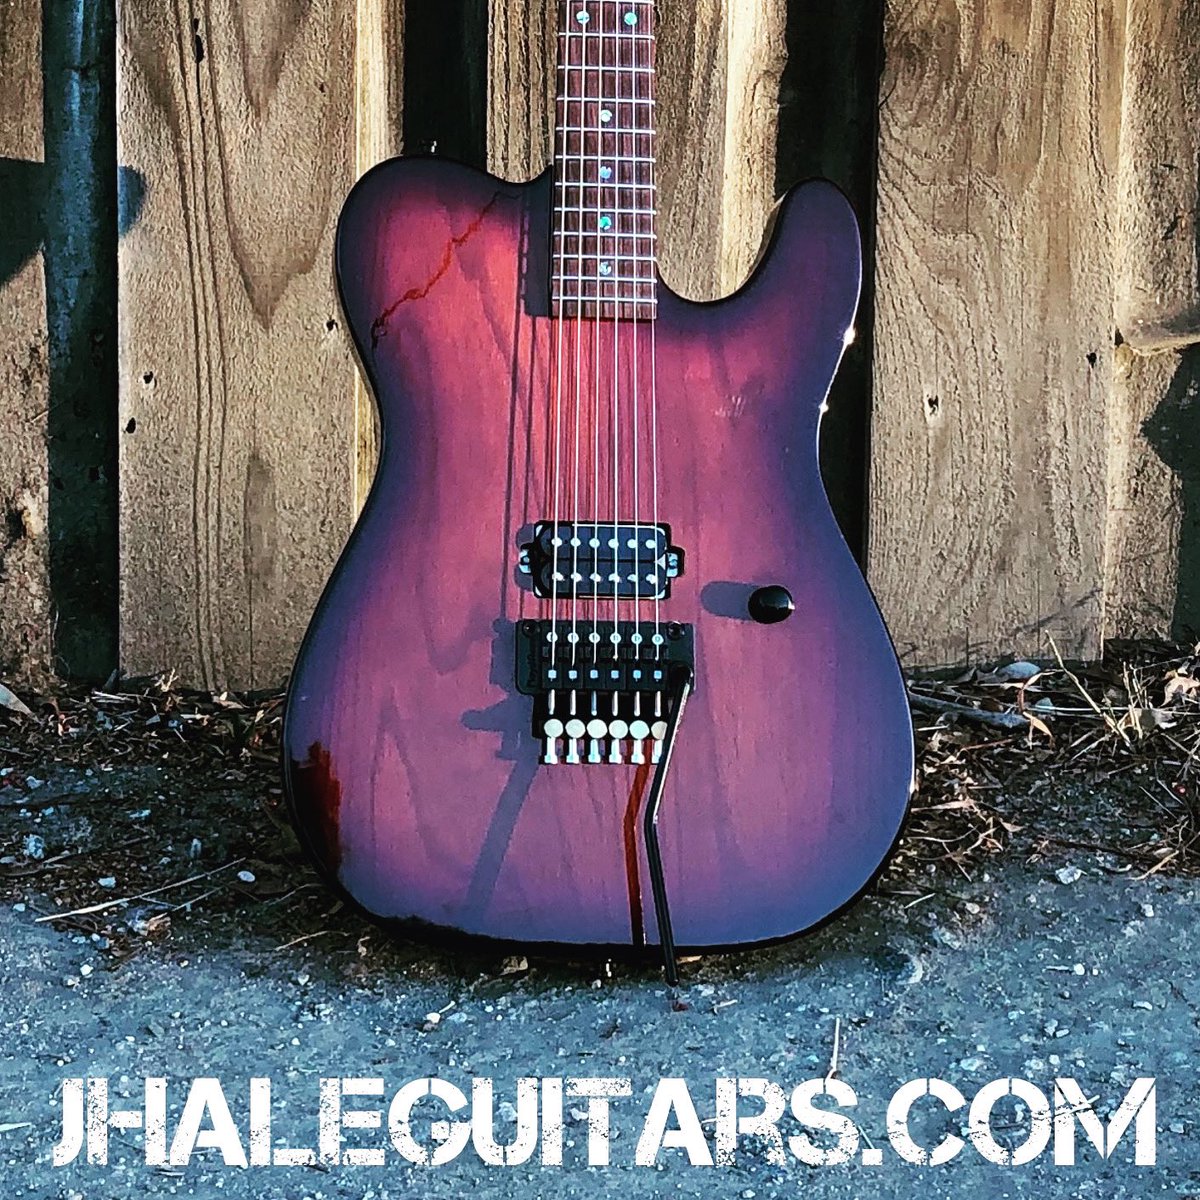 Obligatory #TeleTuesday #guitarporn… own your tone. #tuesdayvibe 

jhaleguitars.com